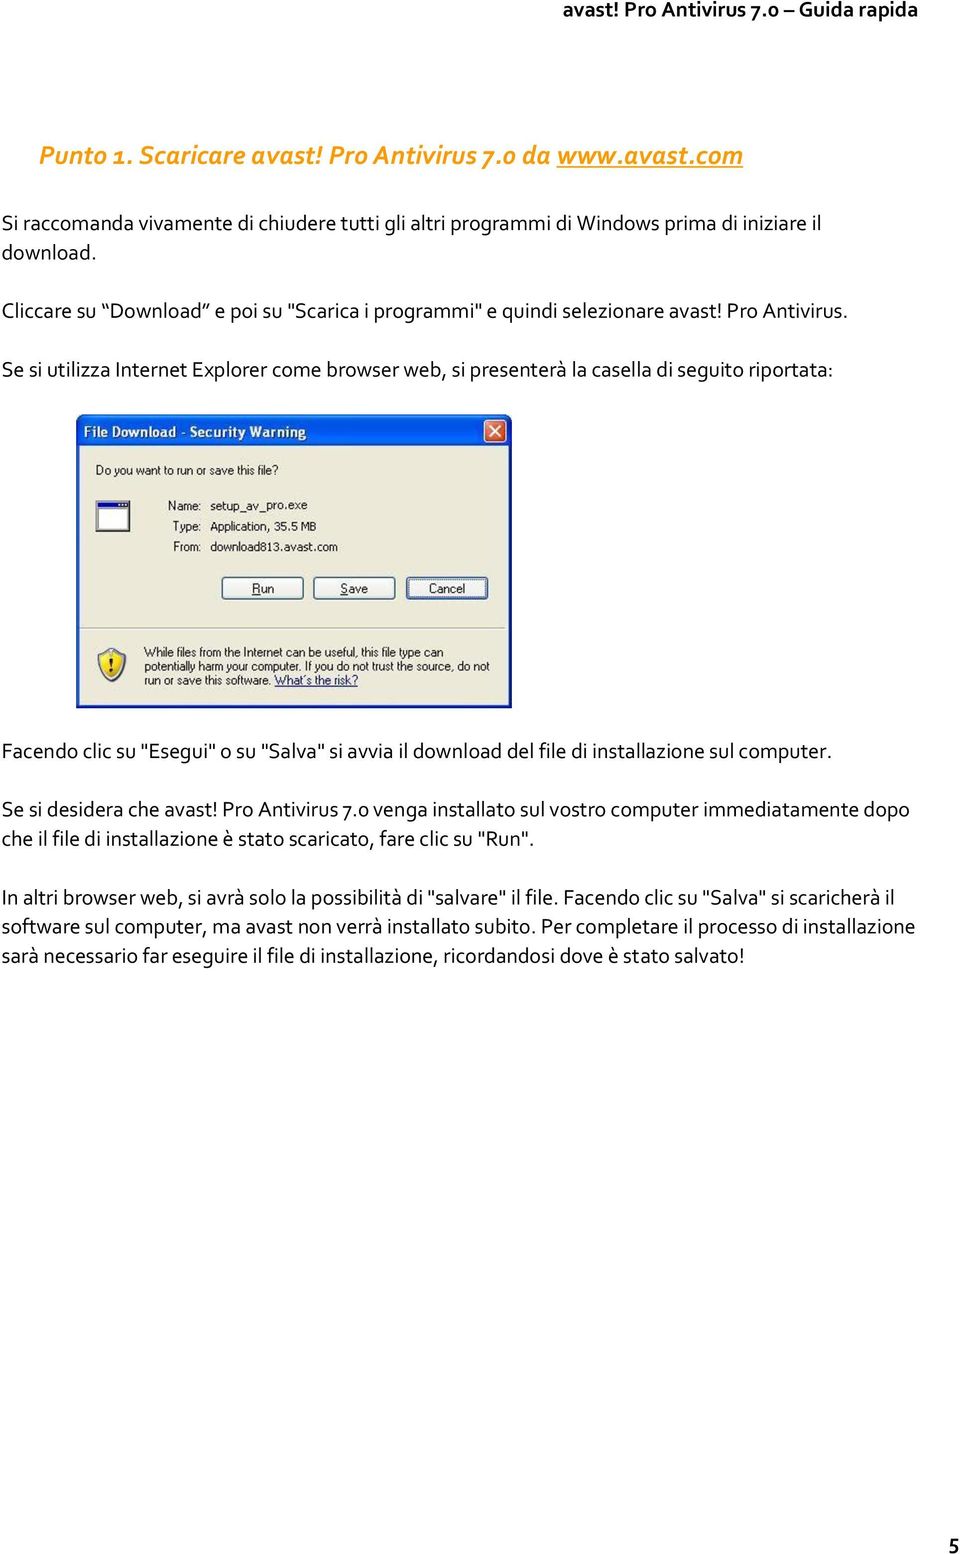 Se si utilizza Internet Explorer come browser web, si presenterà la casella di seguito riportata: Facendo clic su "Esegui" o su "Salva" si avvia il download del file di installazione sul computer.